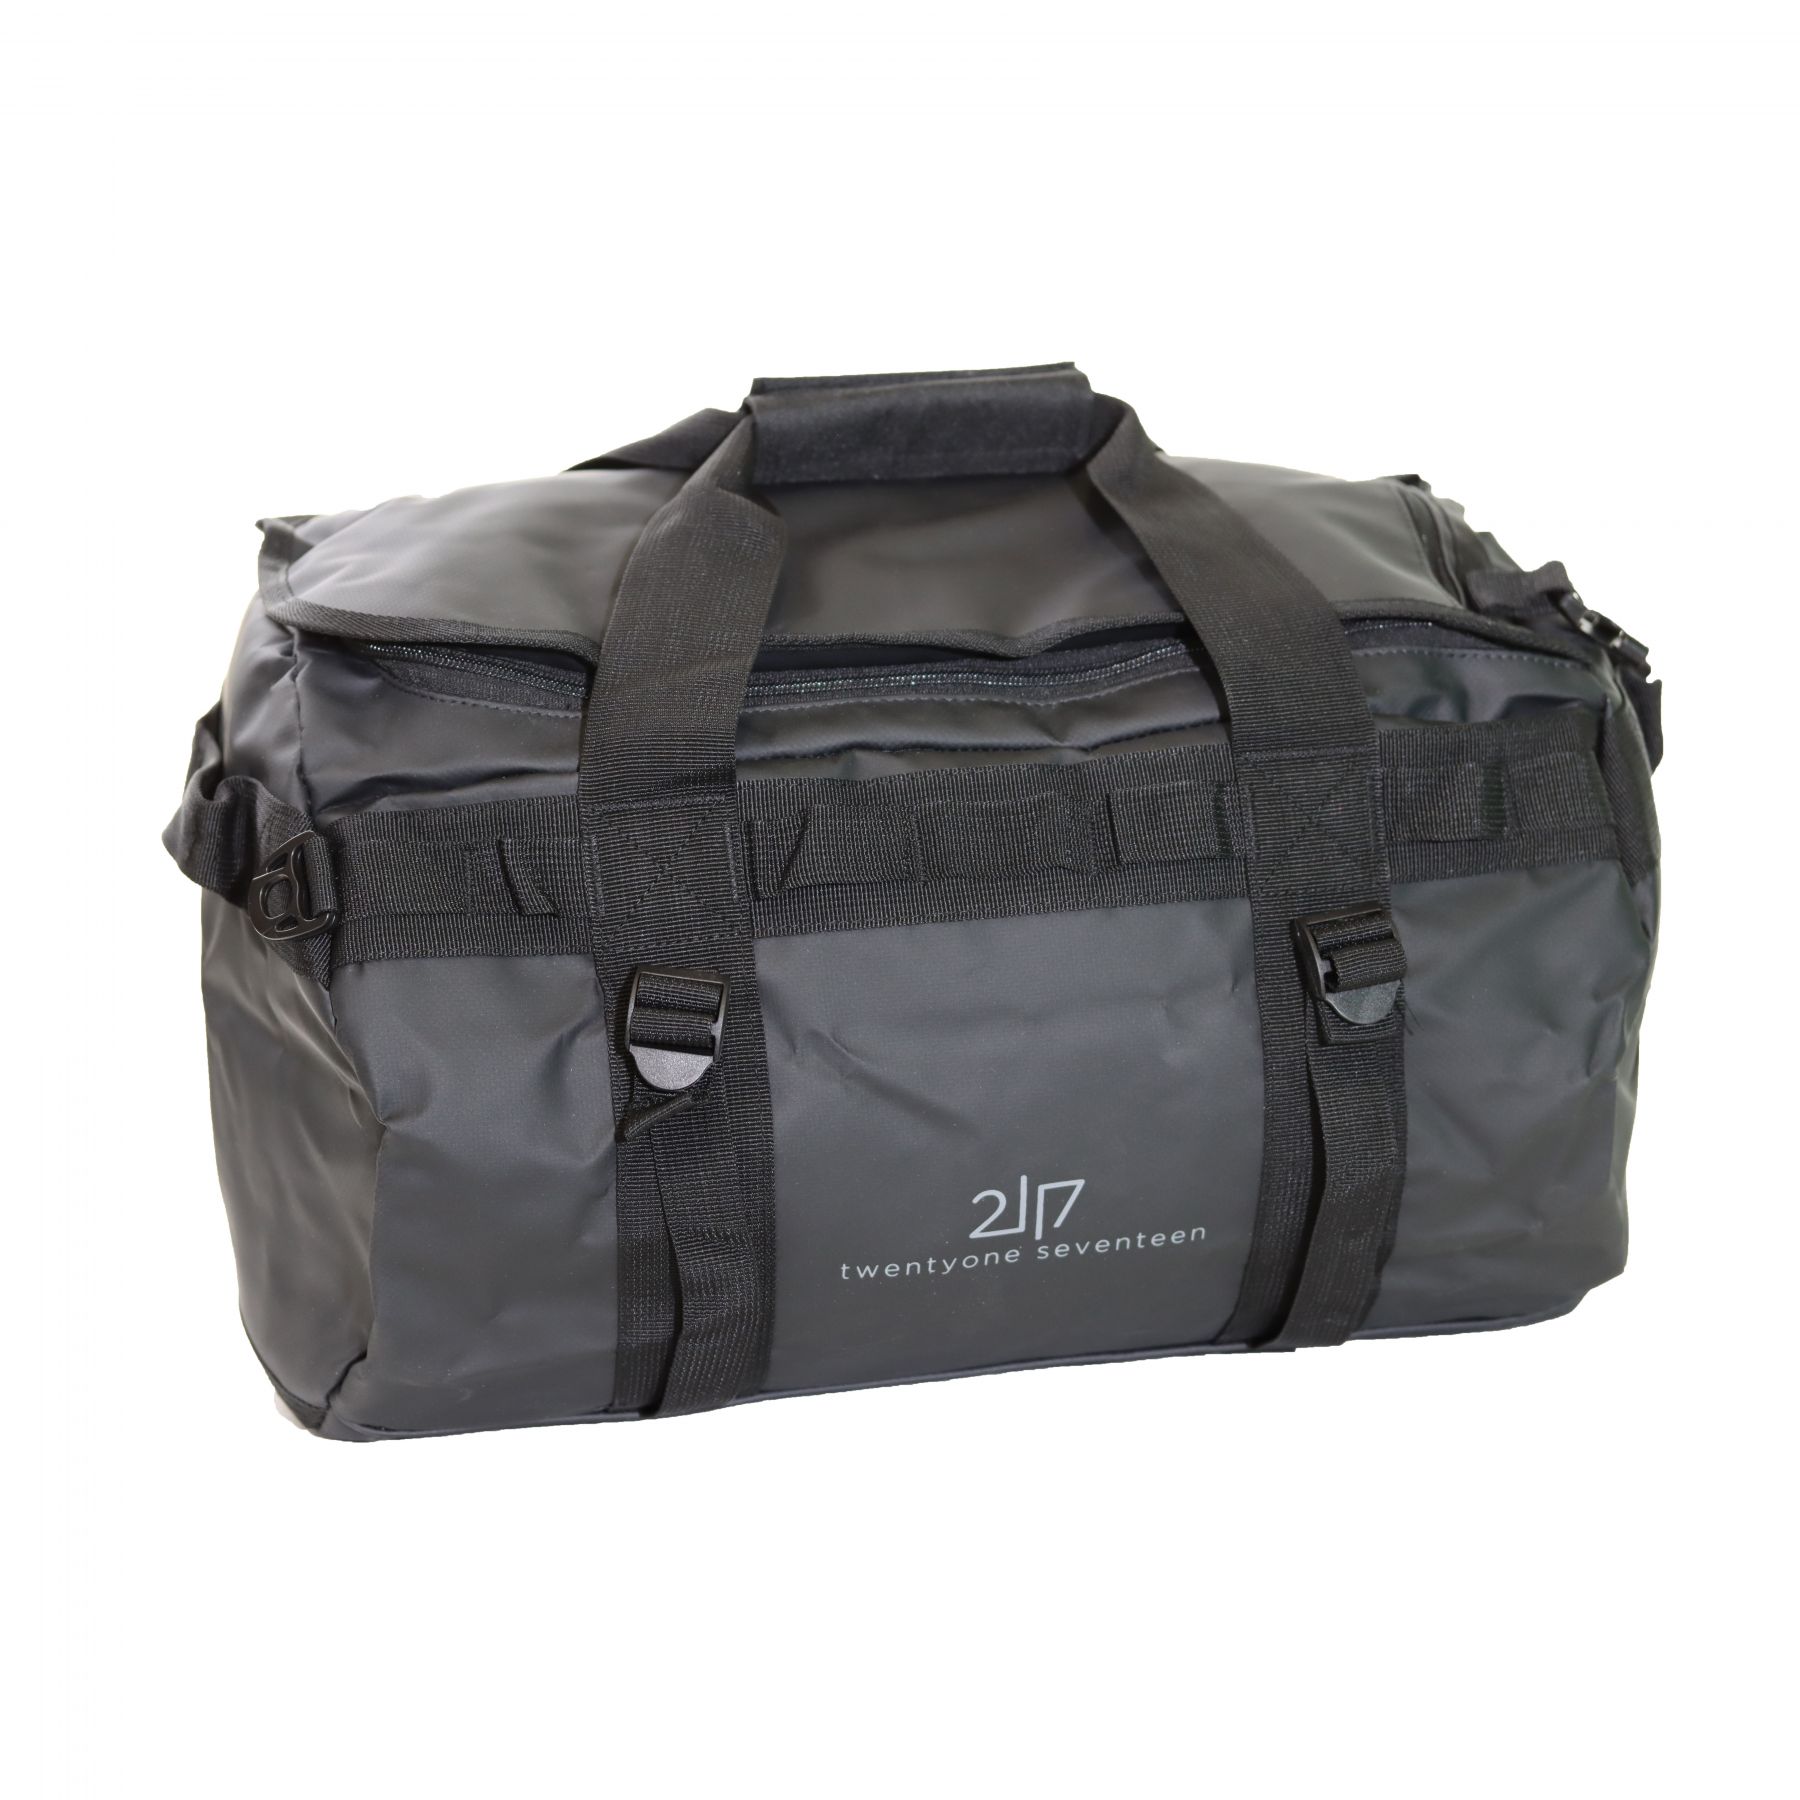 Brug 2117 of Sweden Tarpaulin duffel bag, 40L, sort til en forbedret oplevelse